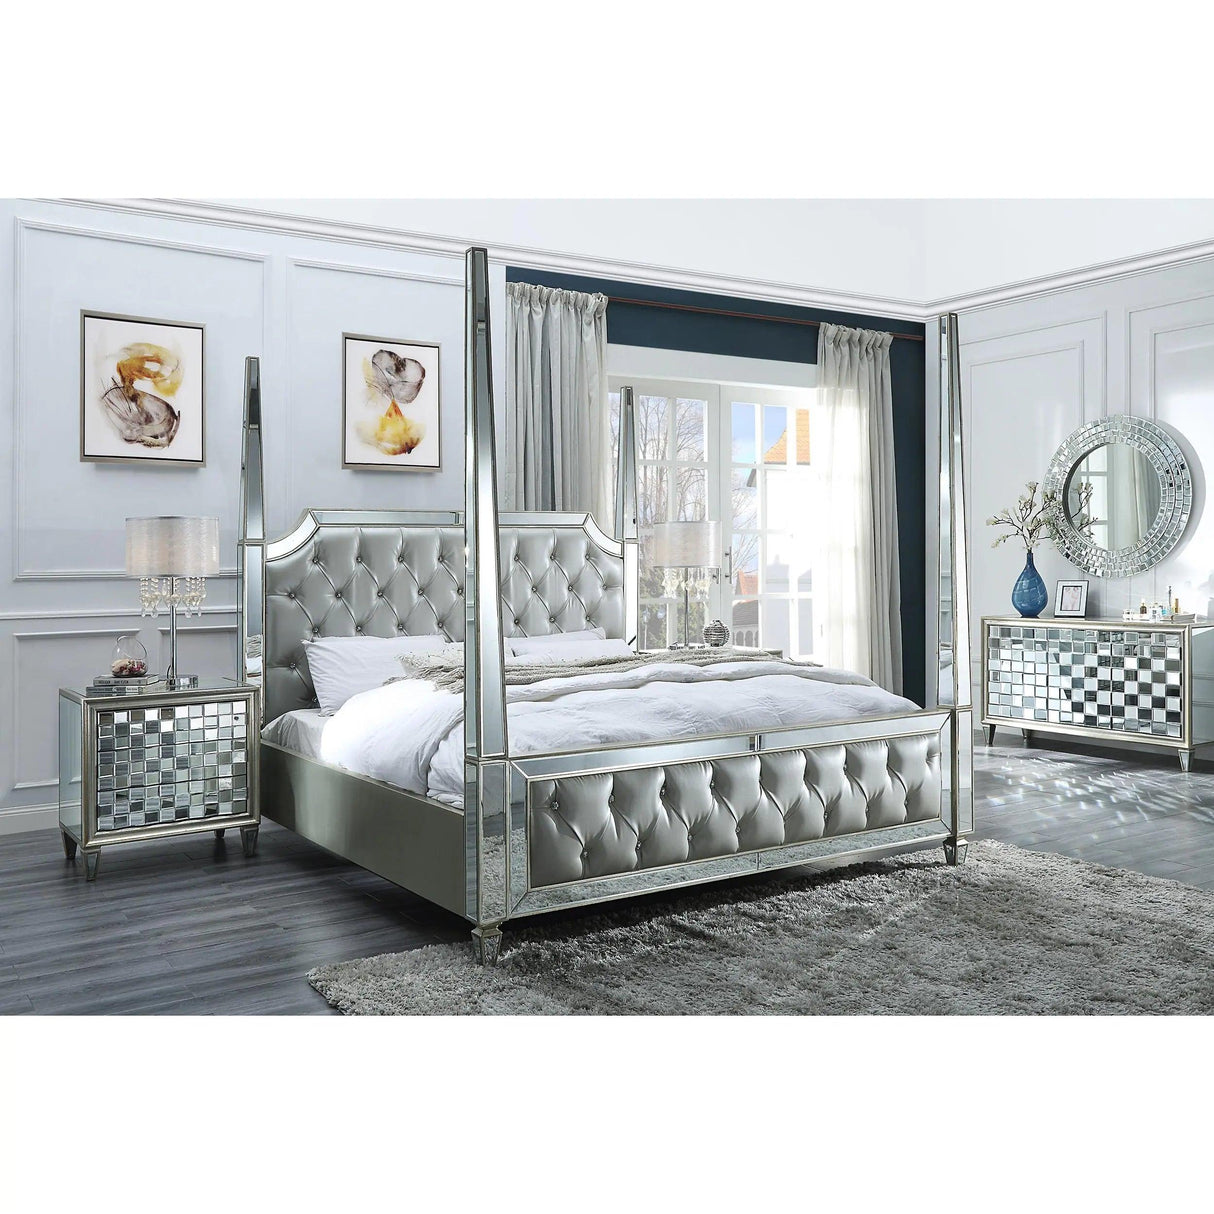 HD-6001 Bedroom Set by Homey Design Homey Design Furniture